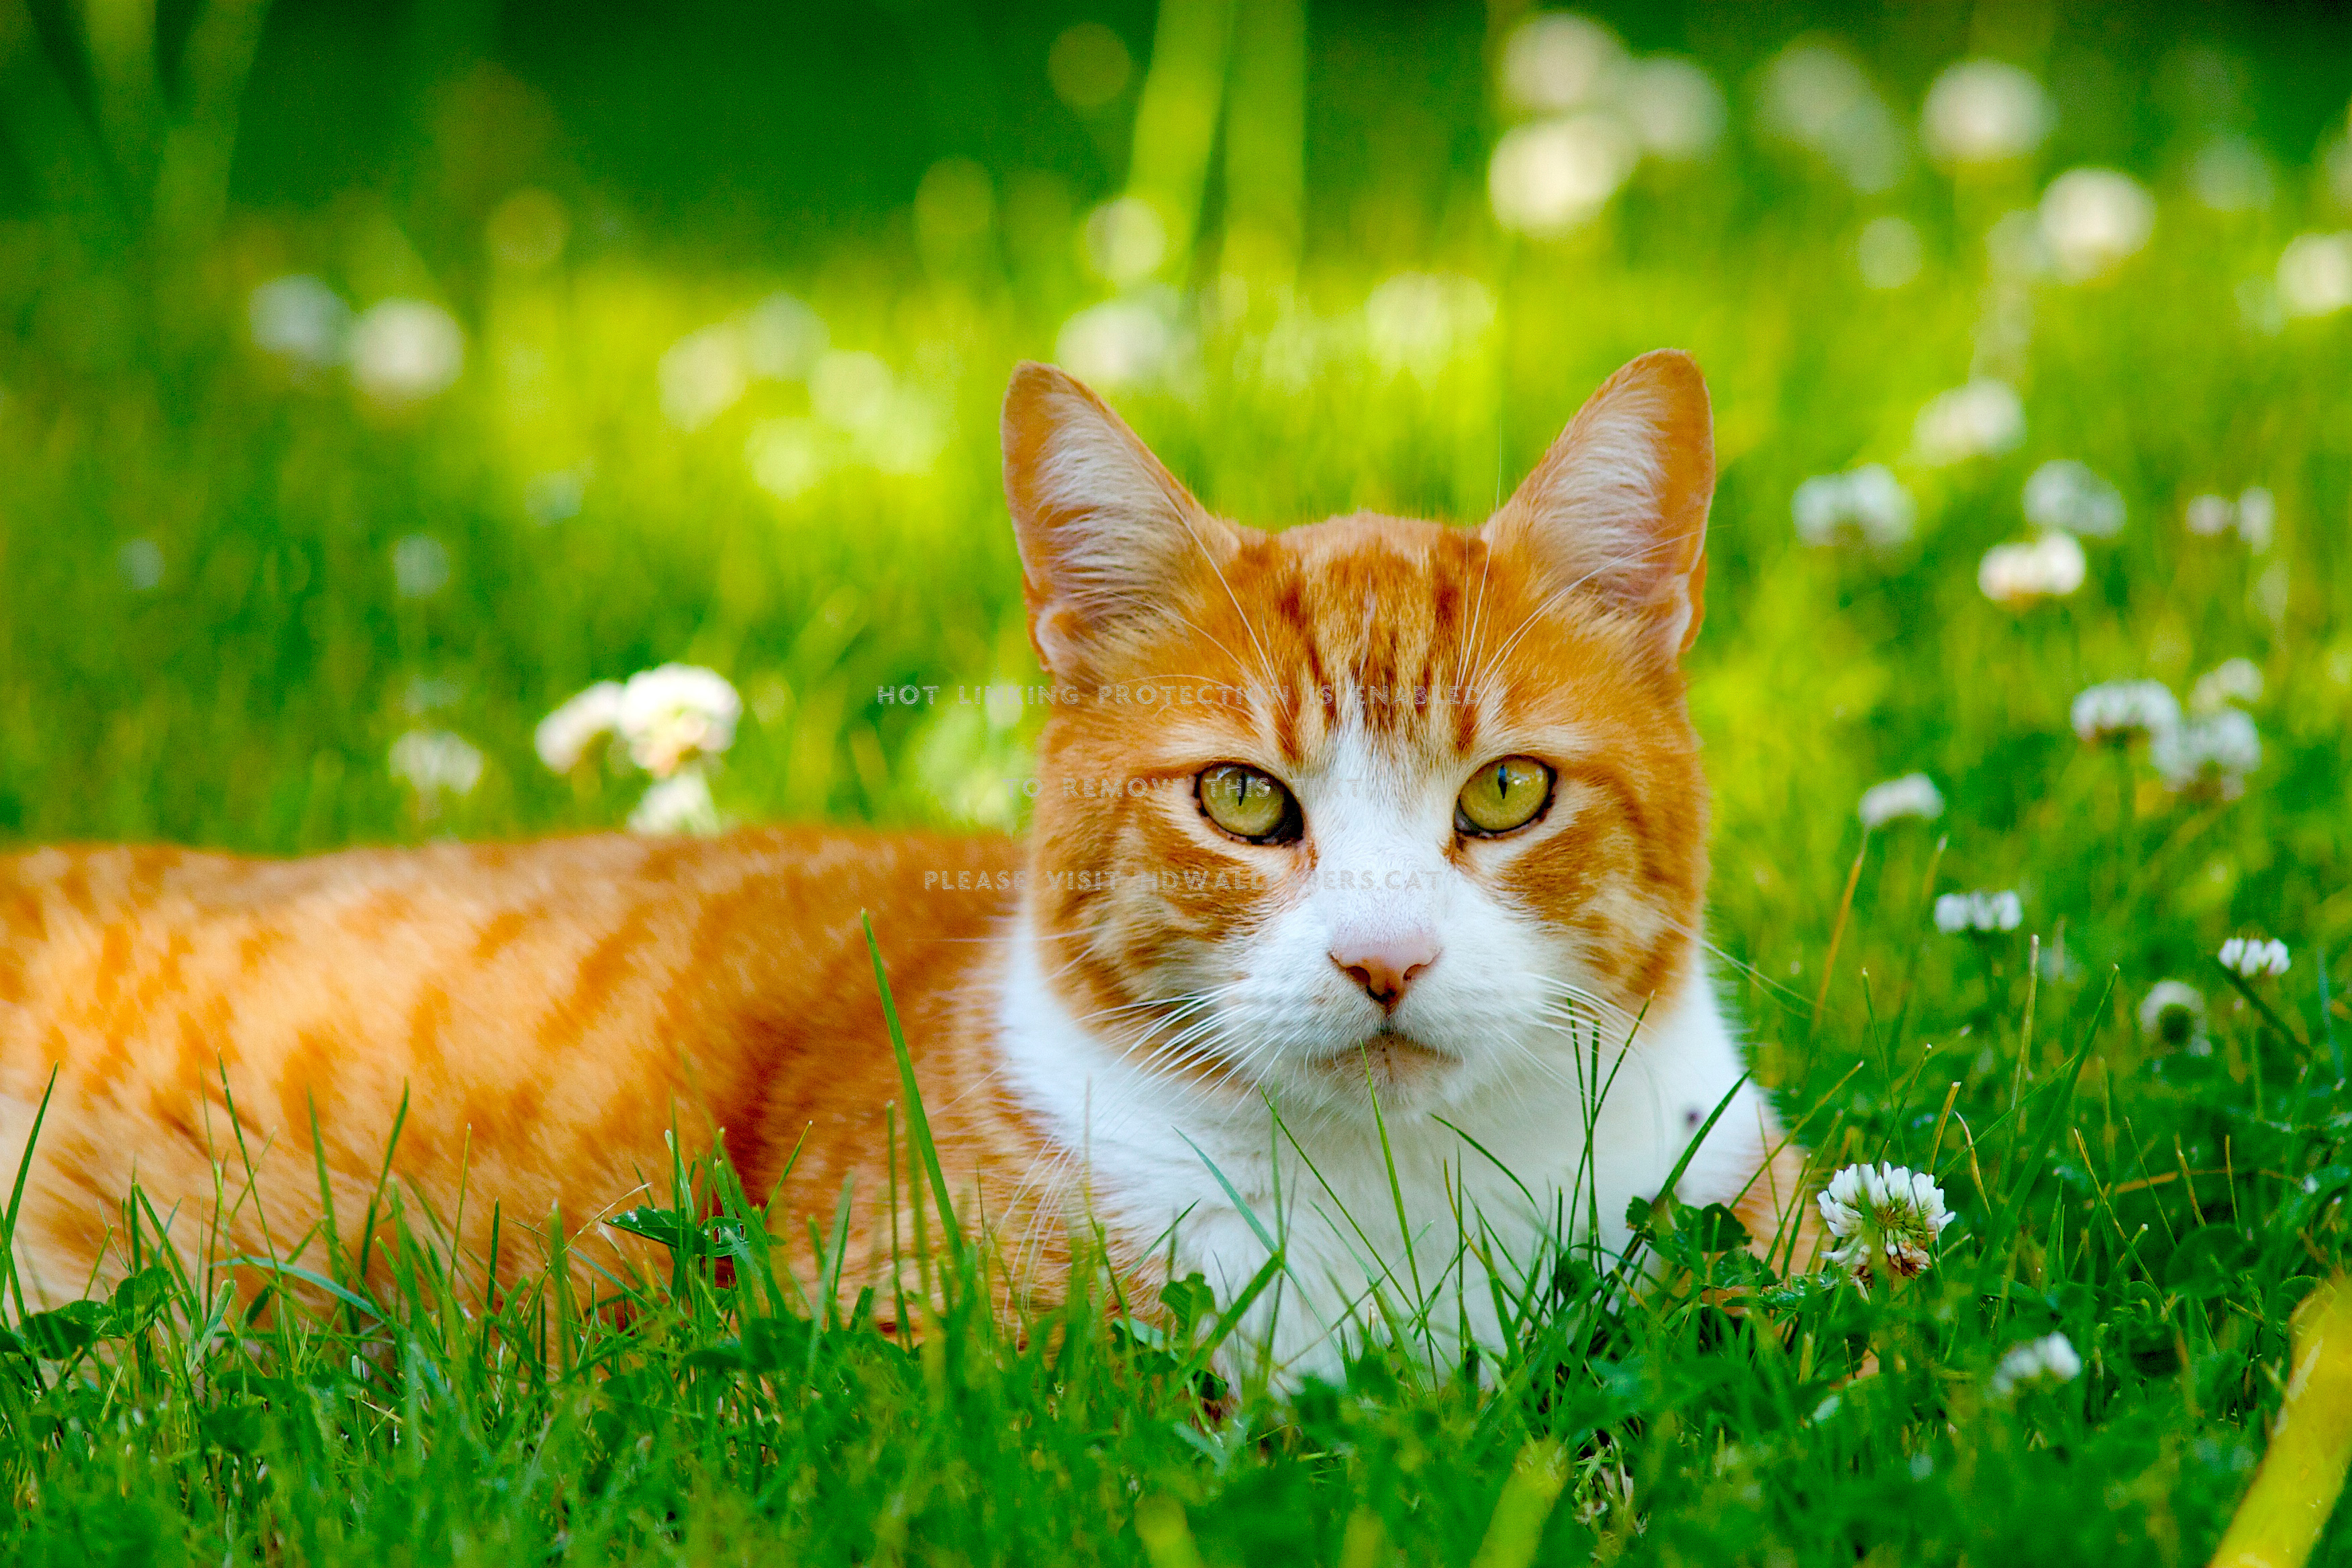 meow fond d'écran,chat,chats de petite à moyenne taille,moustaches,félidés,vert